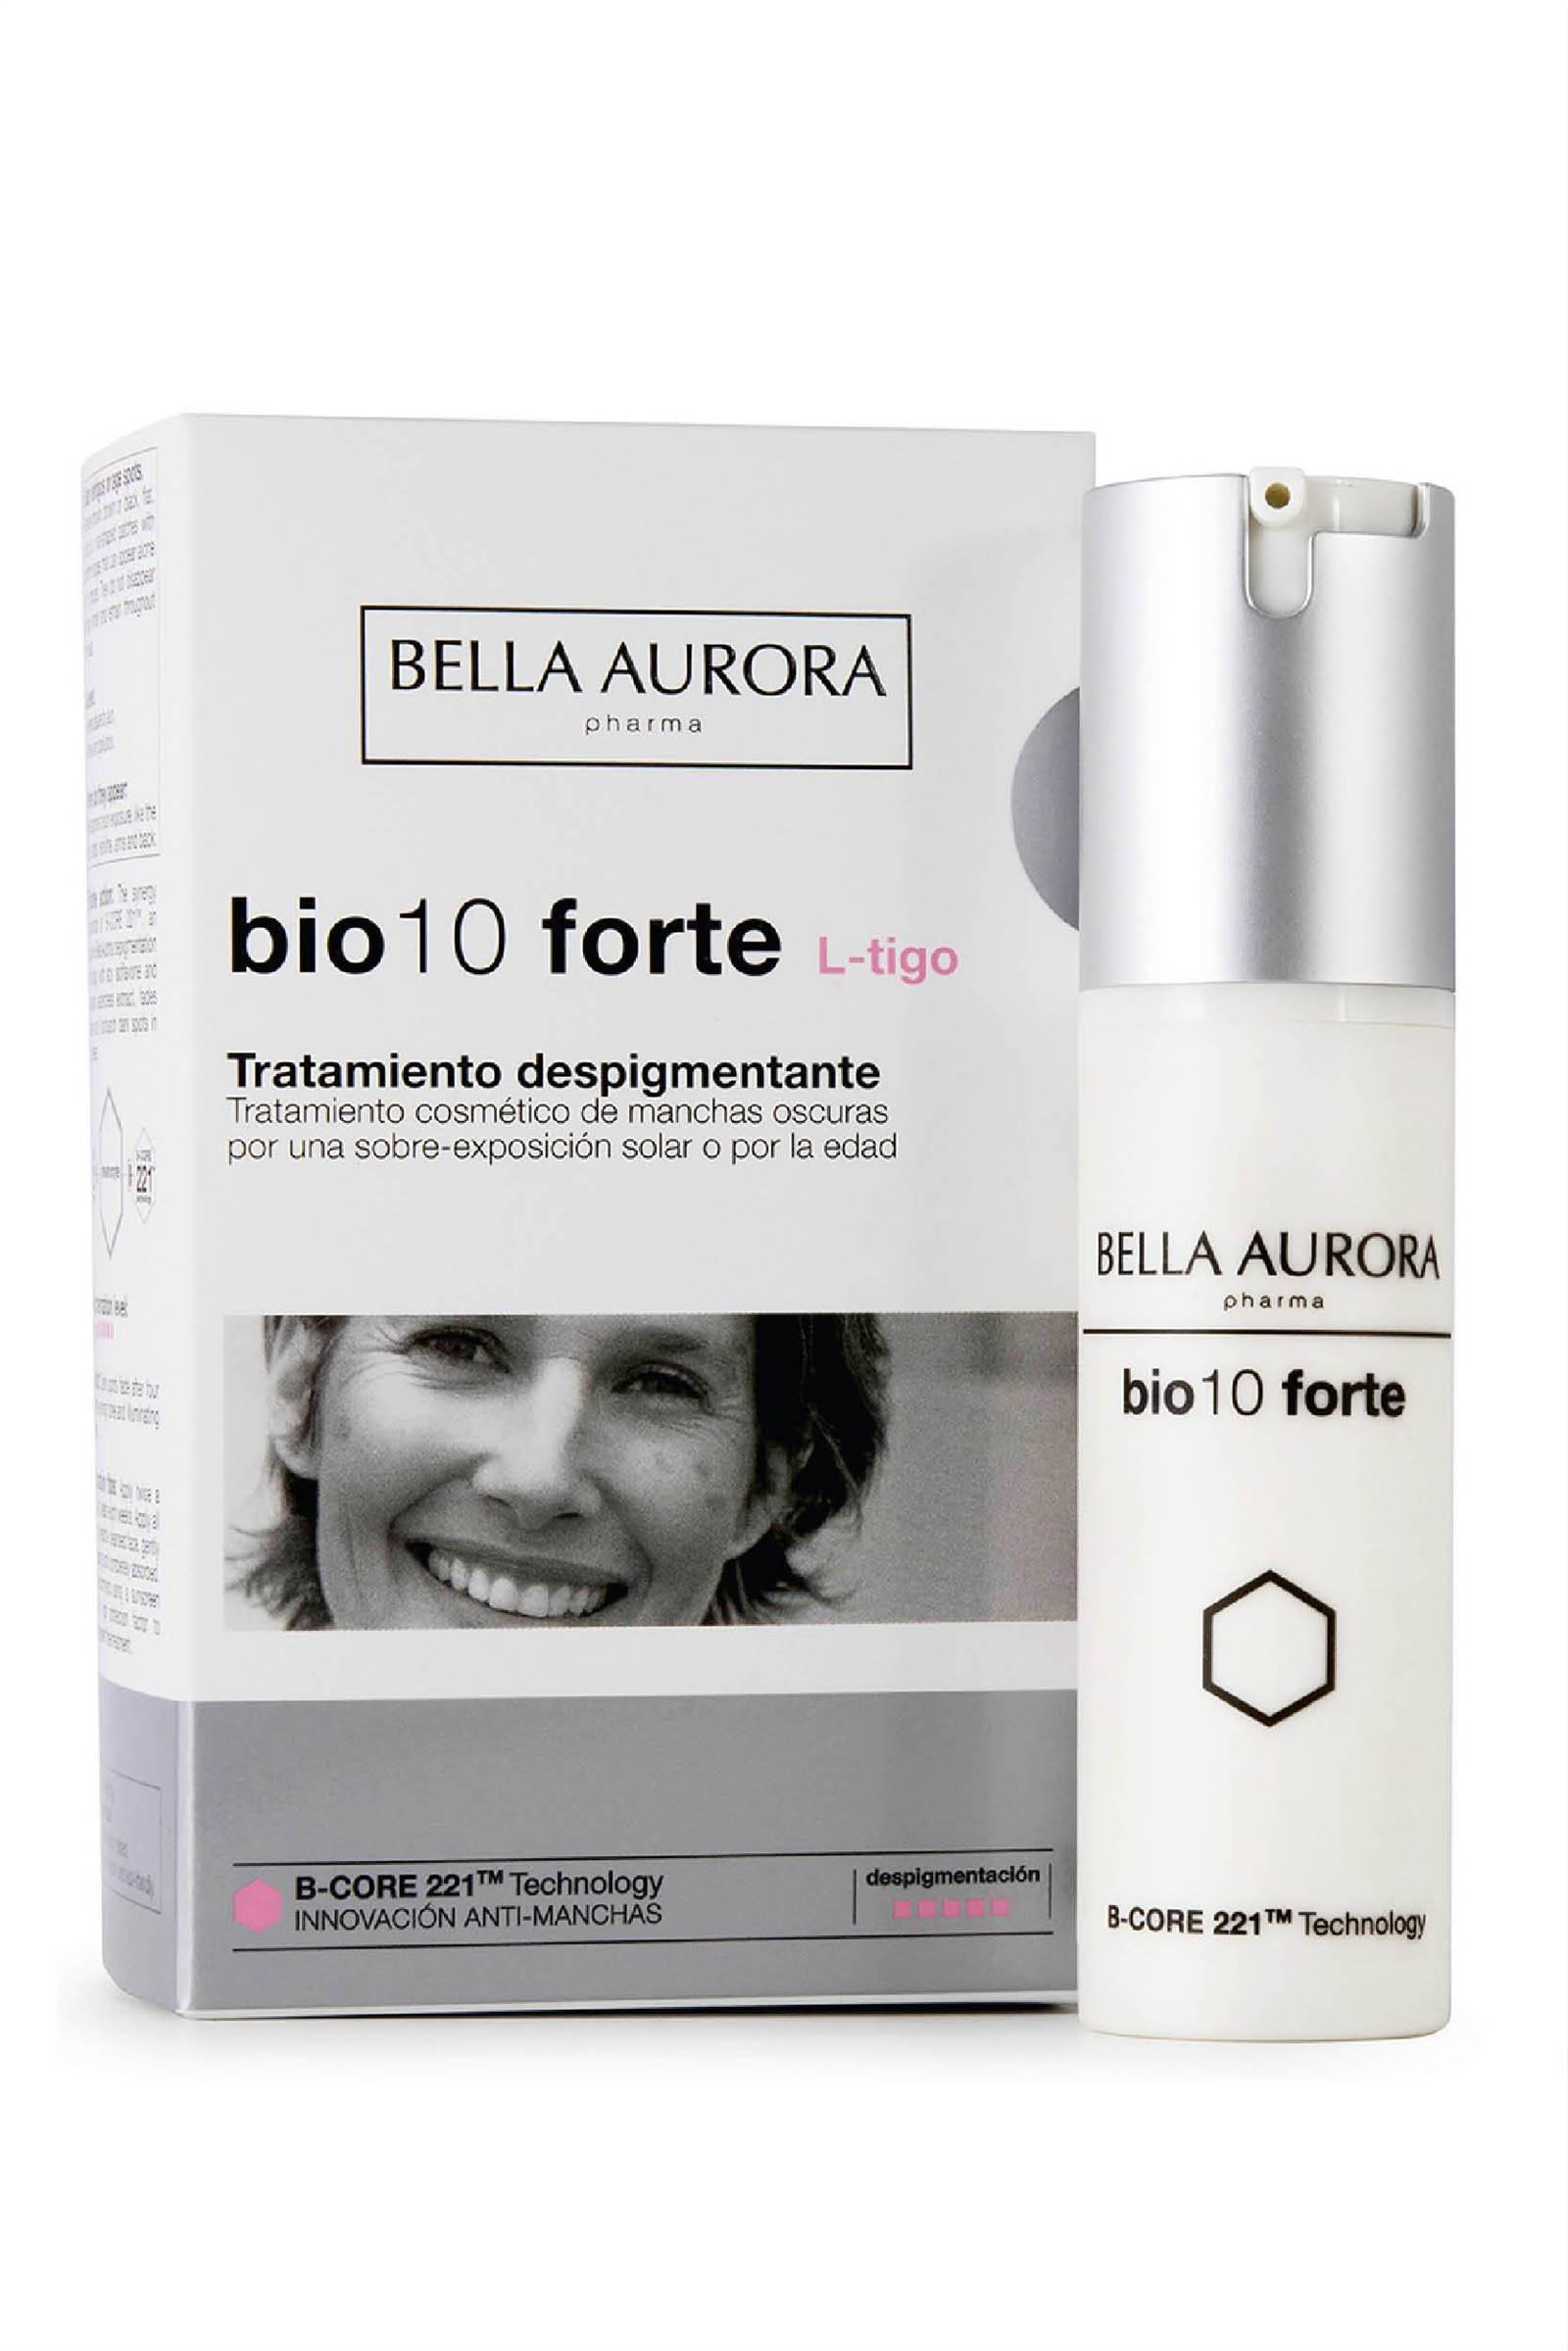 premios clara belleza cuidado facial5. Tratamiento despigmentante intensivo Bio10 Forte L-Tigo de Bella Aurora